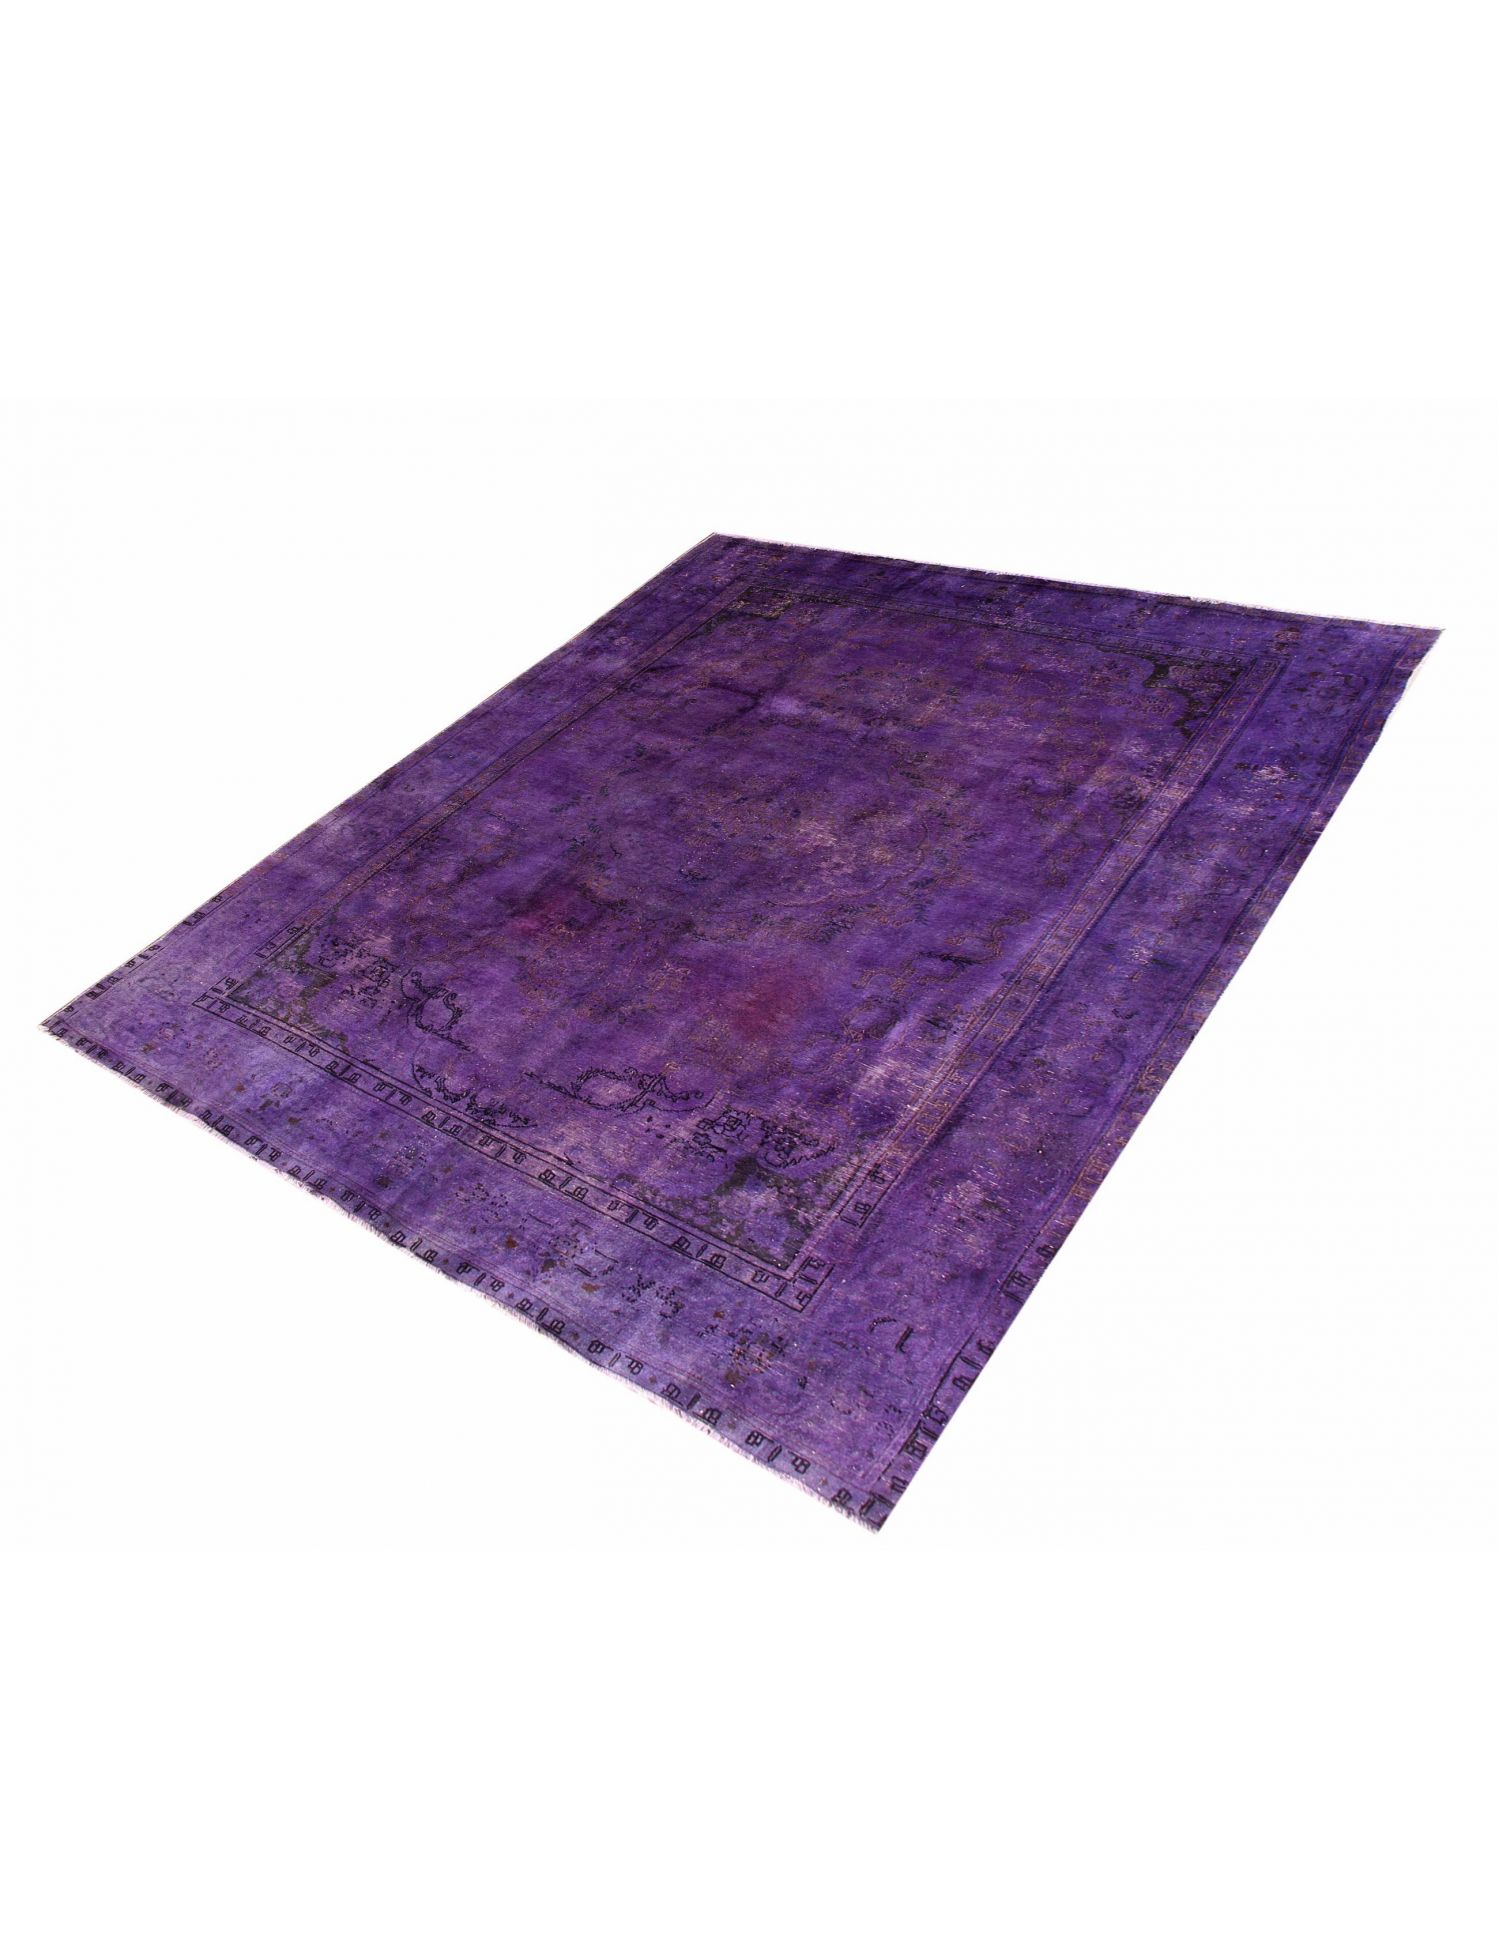 Persischer Vintage Teppich  lila <br/>390 x 280 cm